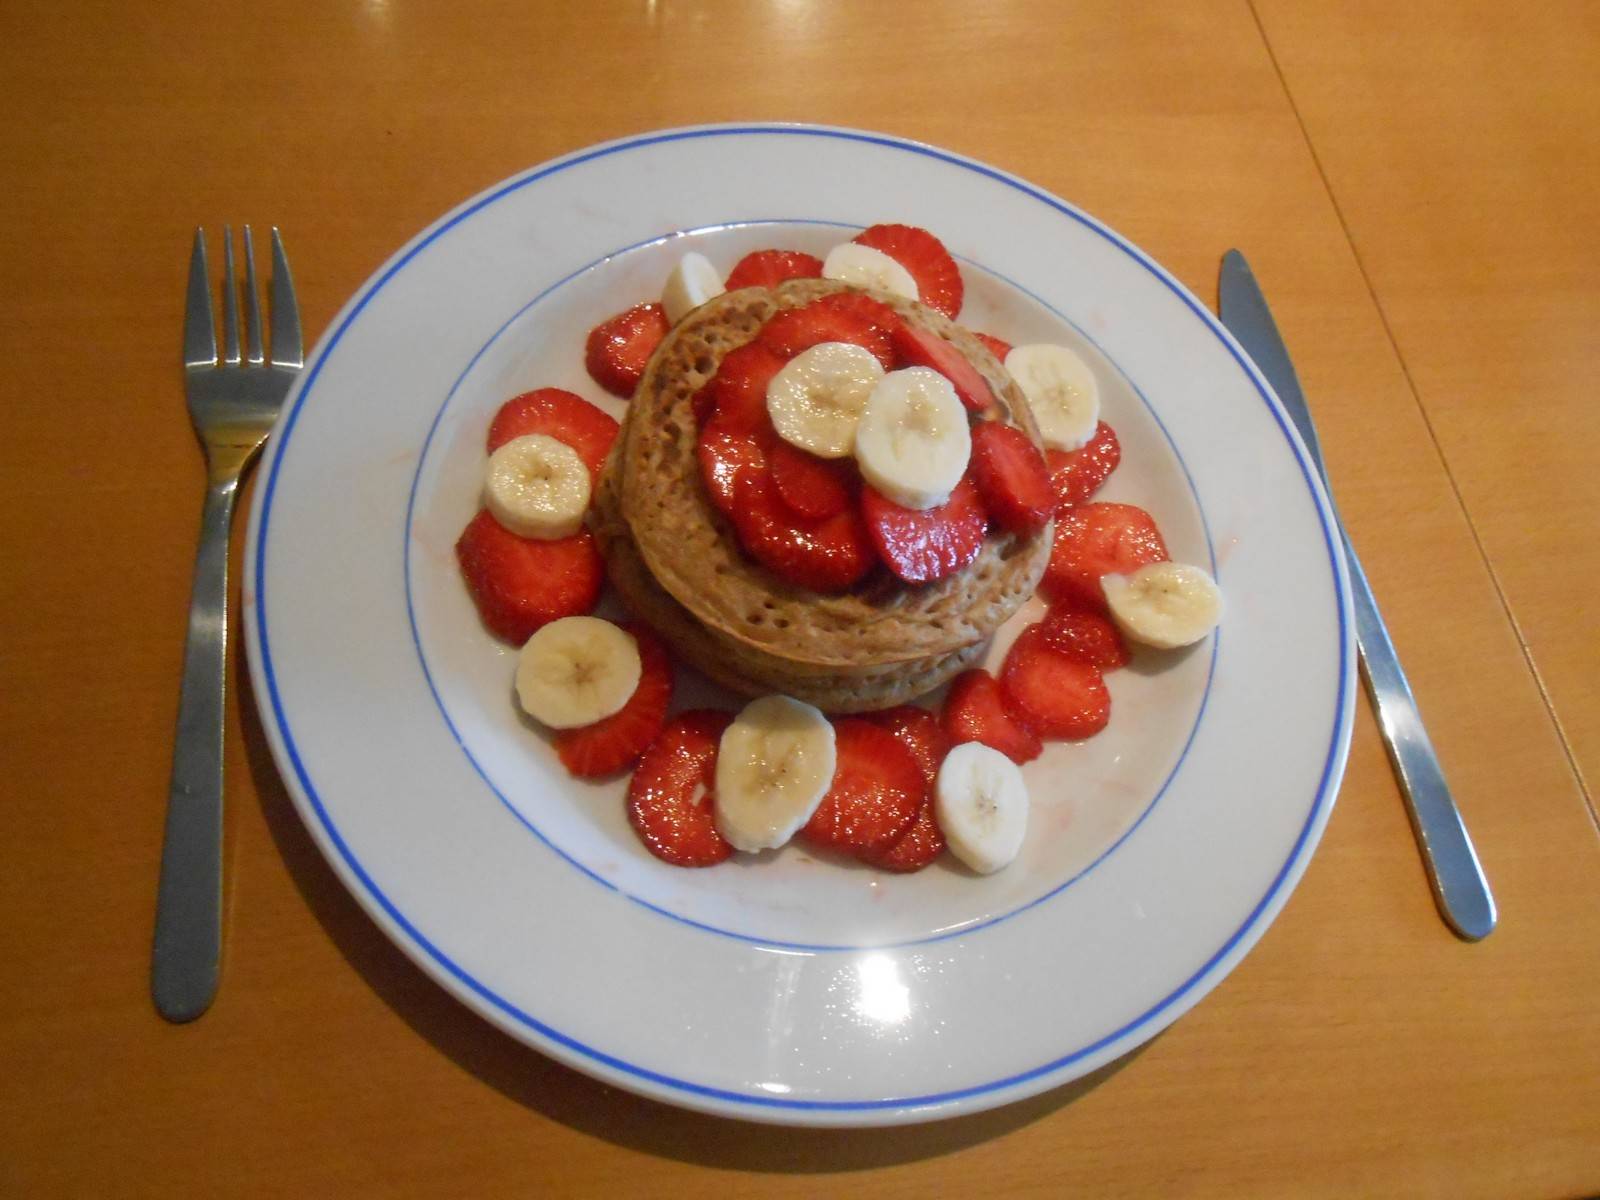 Haferflocken-Vollkorn-Pancakes mit Erdbeeren